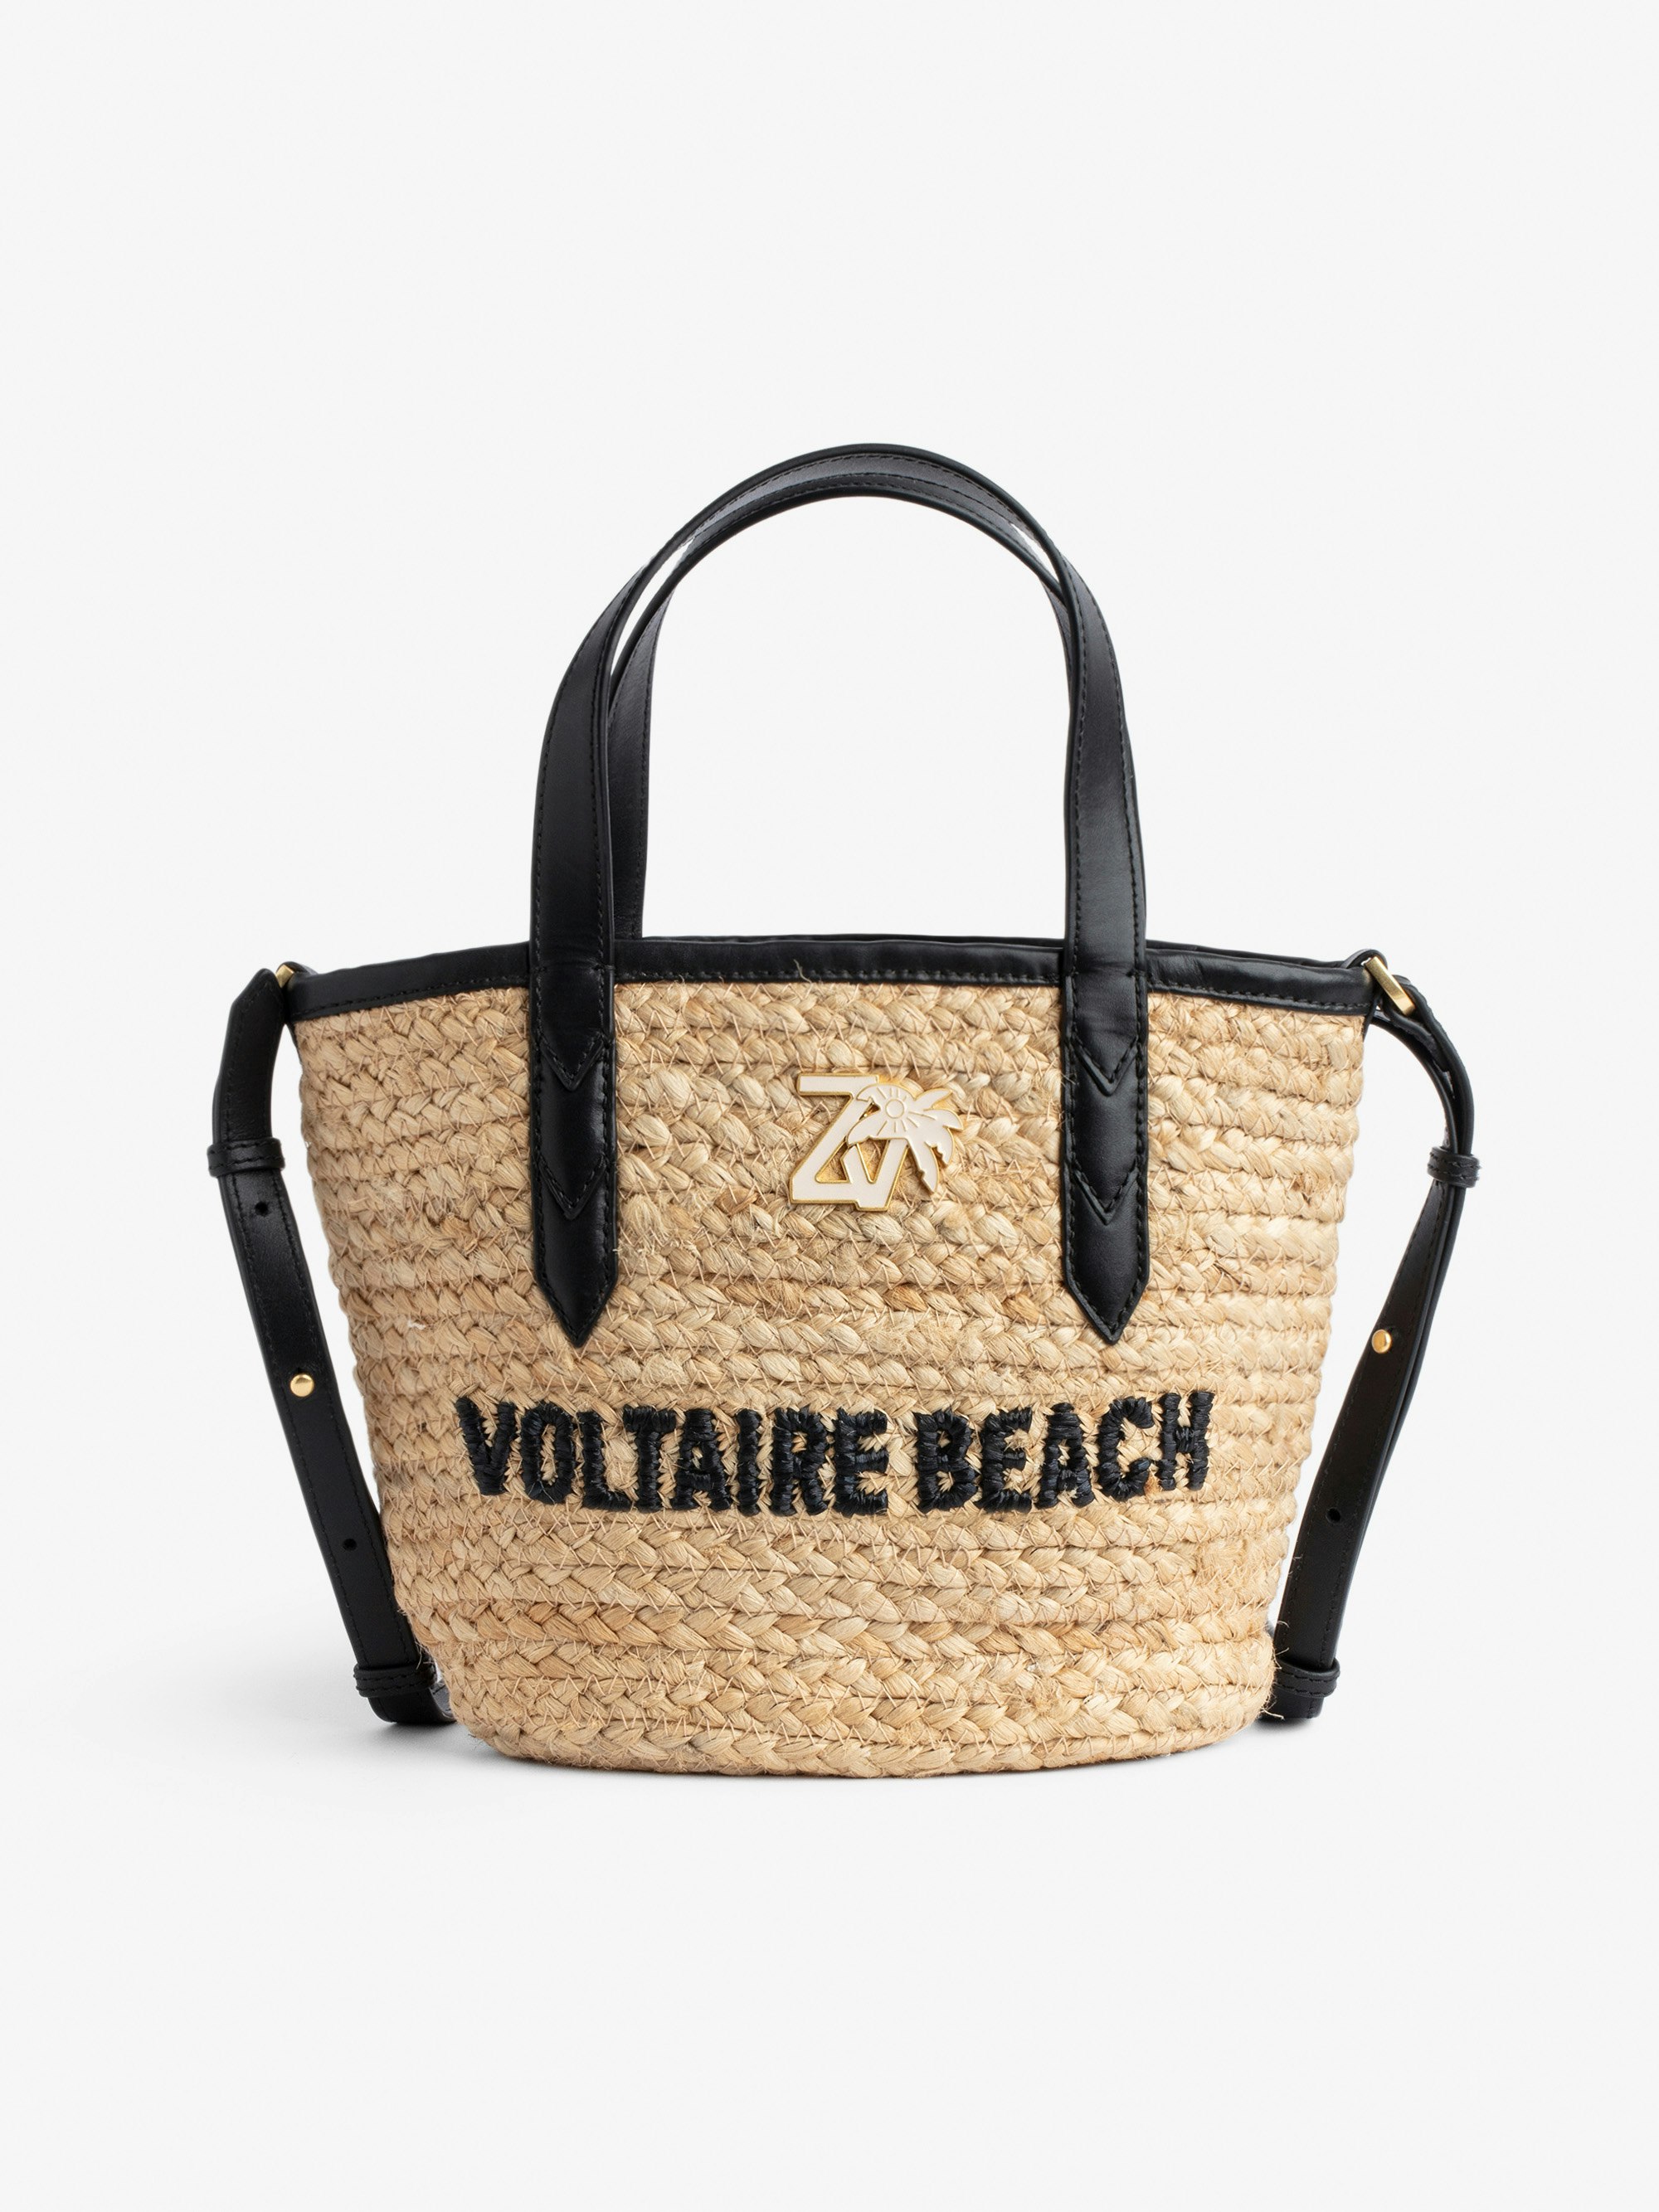 Borsa Le Baby Beach Bag - Borsa in paglia con tracolla in pelle nera, con ricamo "Voltaire Beach" e impreziosita da un charm ZV - Donna